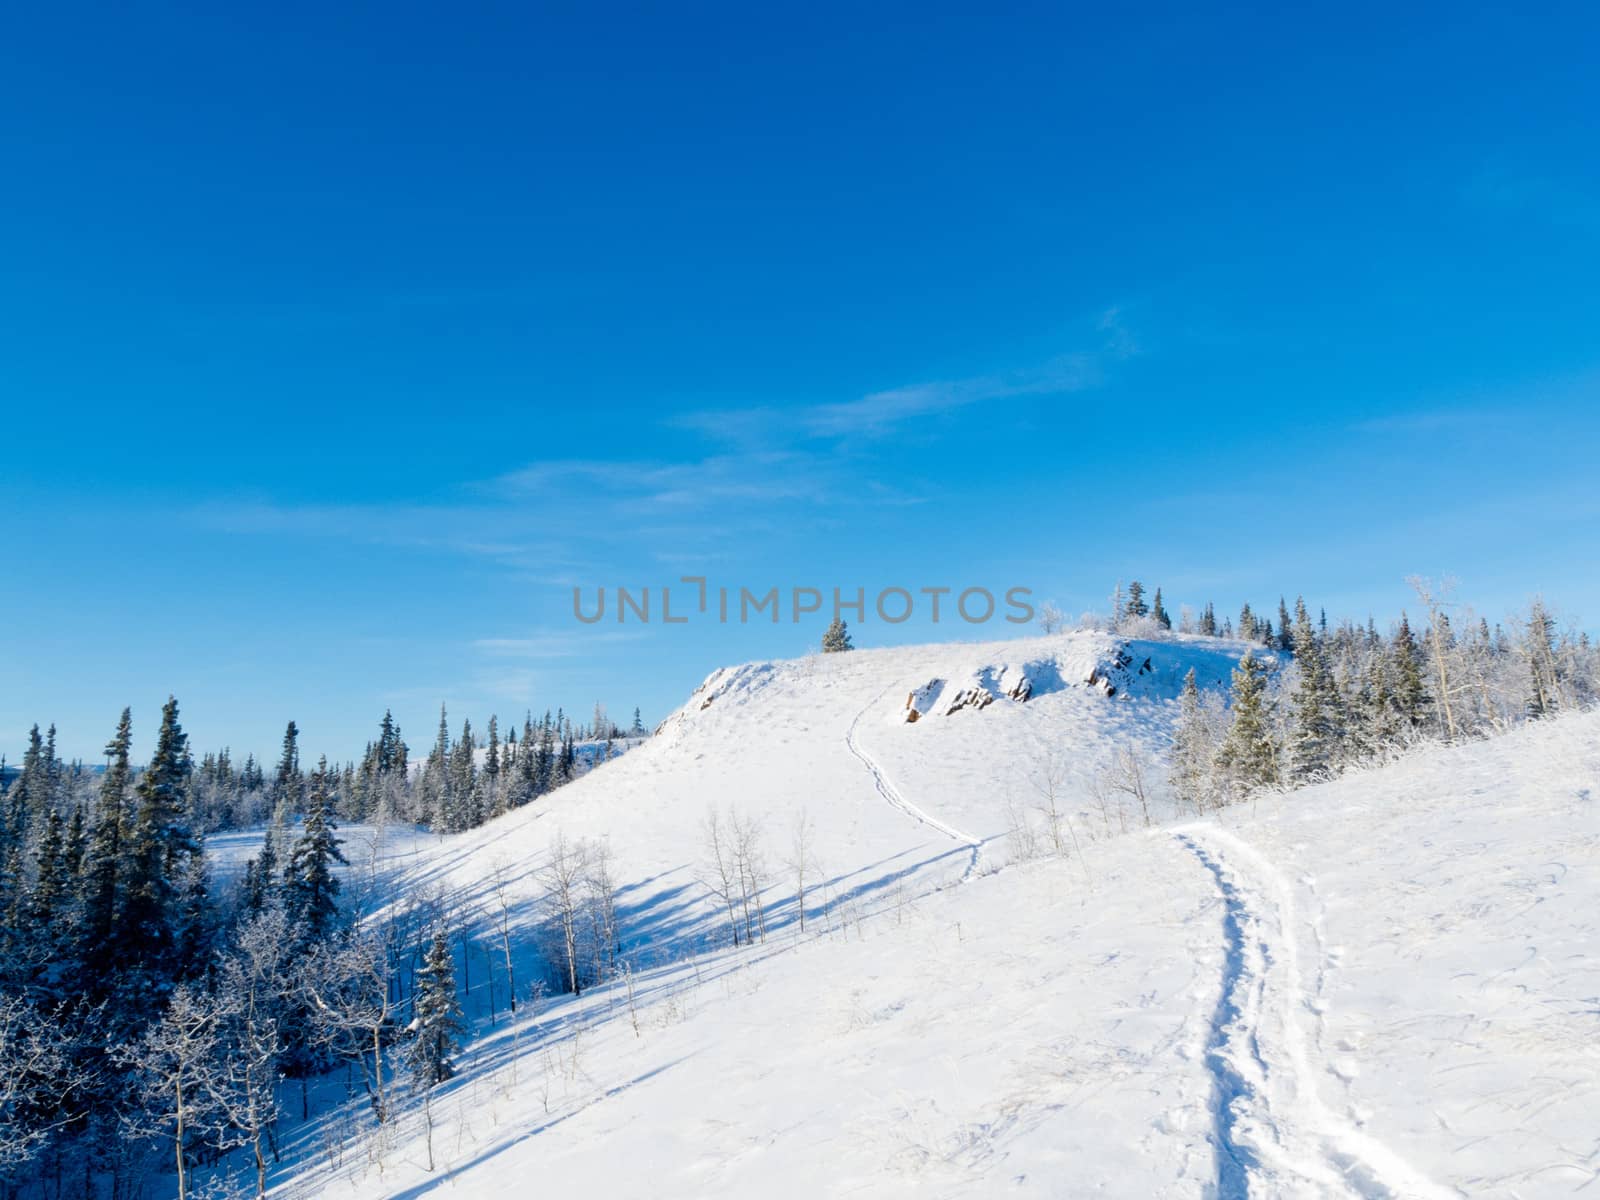 Snow-shoe trail prints in deep powder snow on hills in pristine winter wonderland wilderness